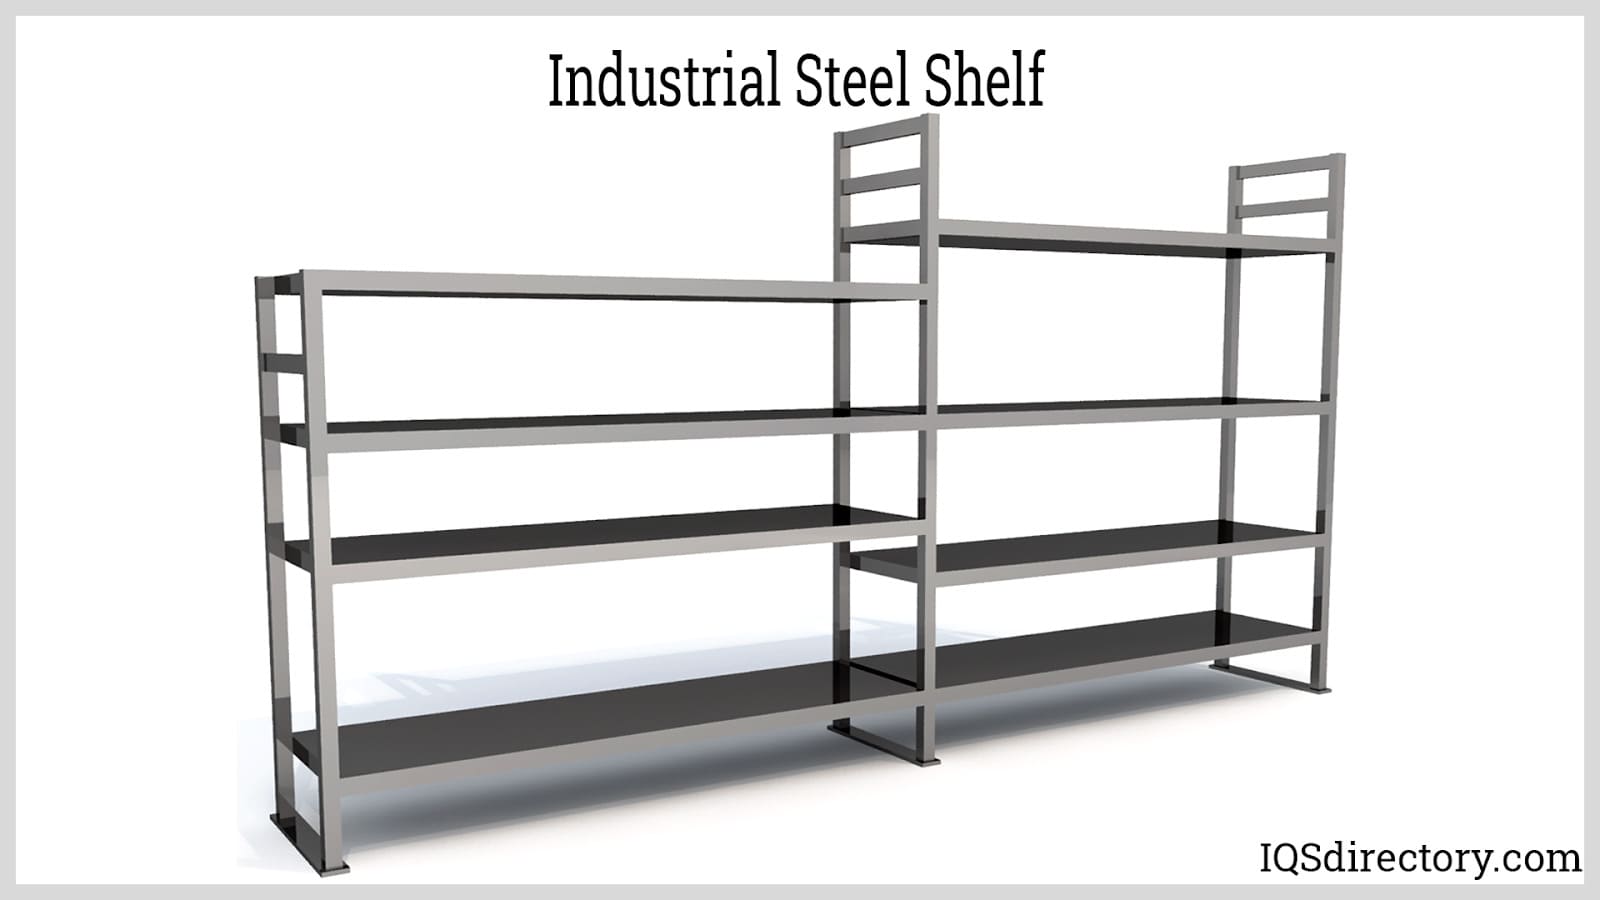 Industrial Steel Shelf